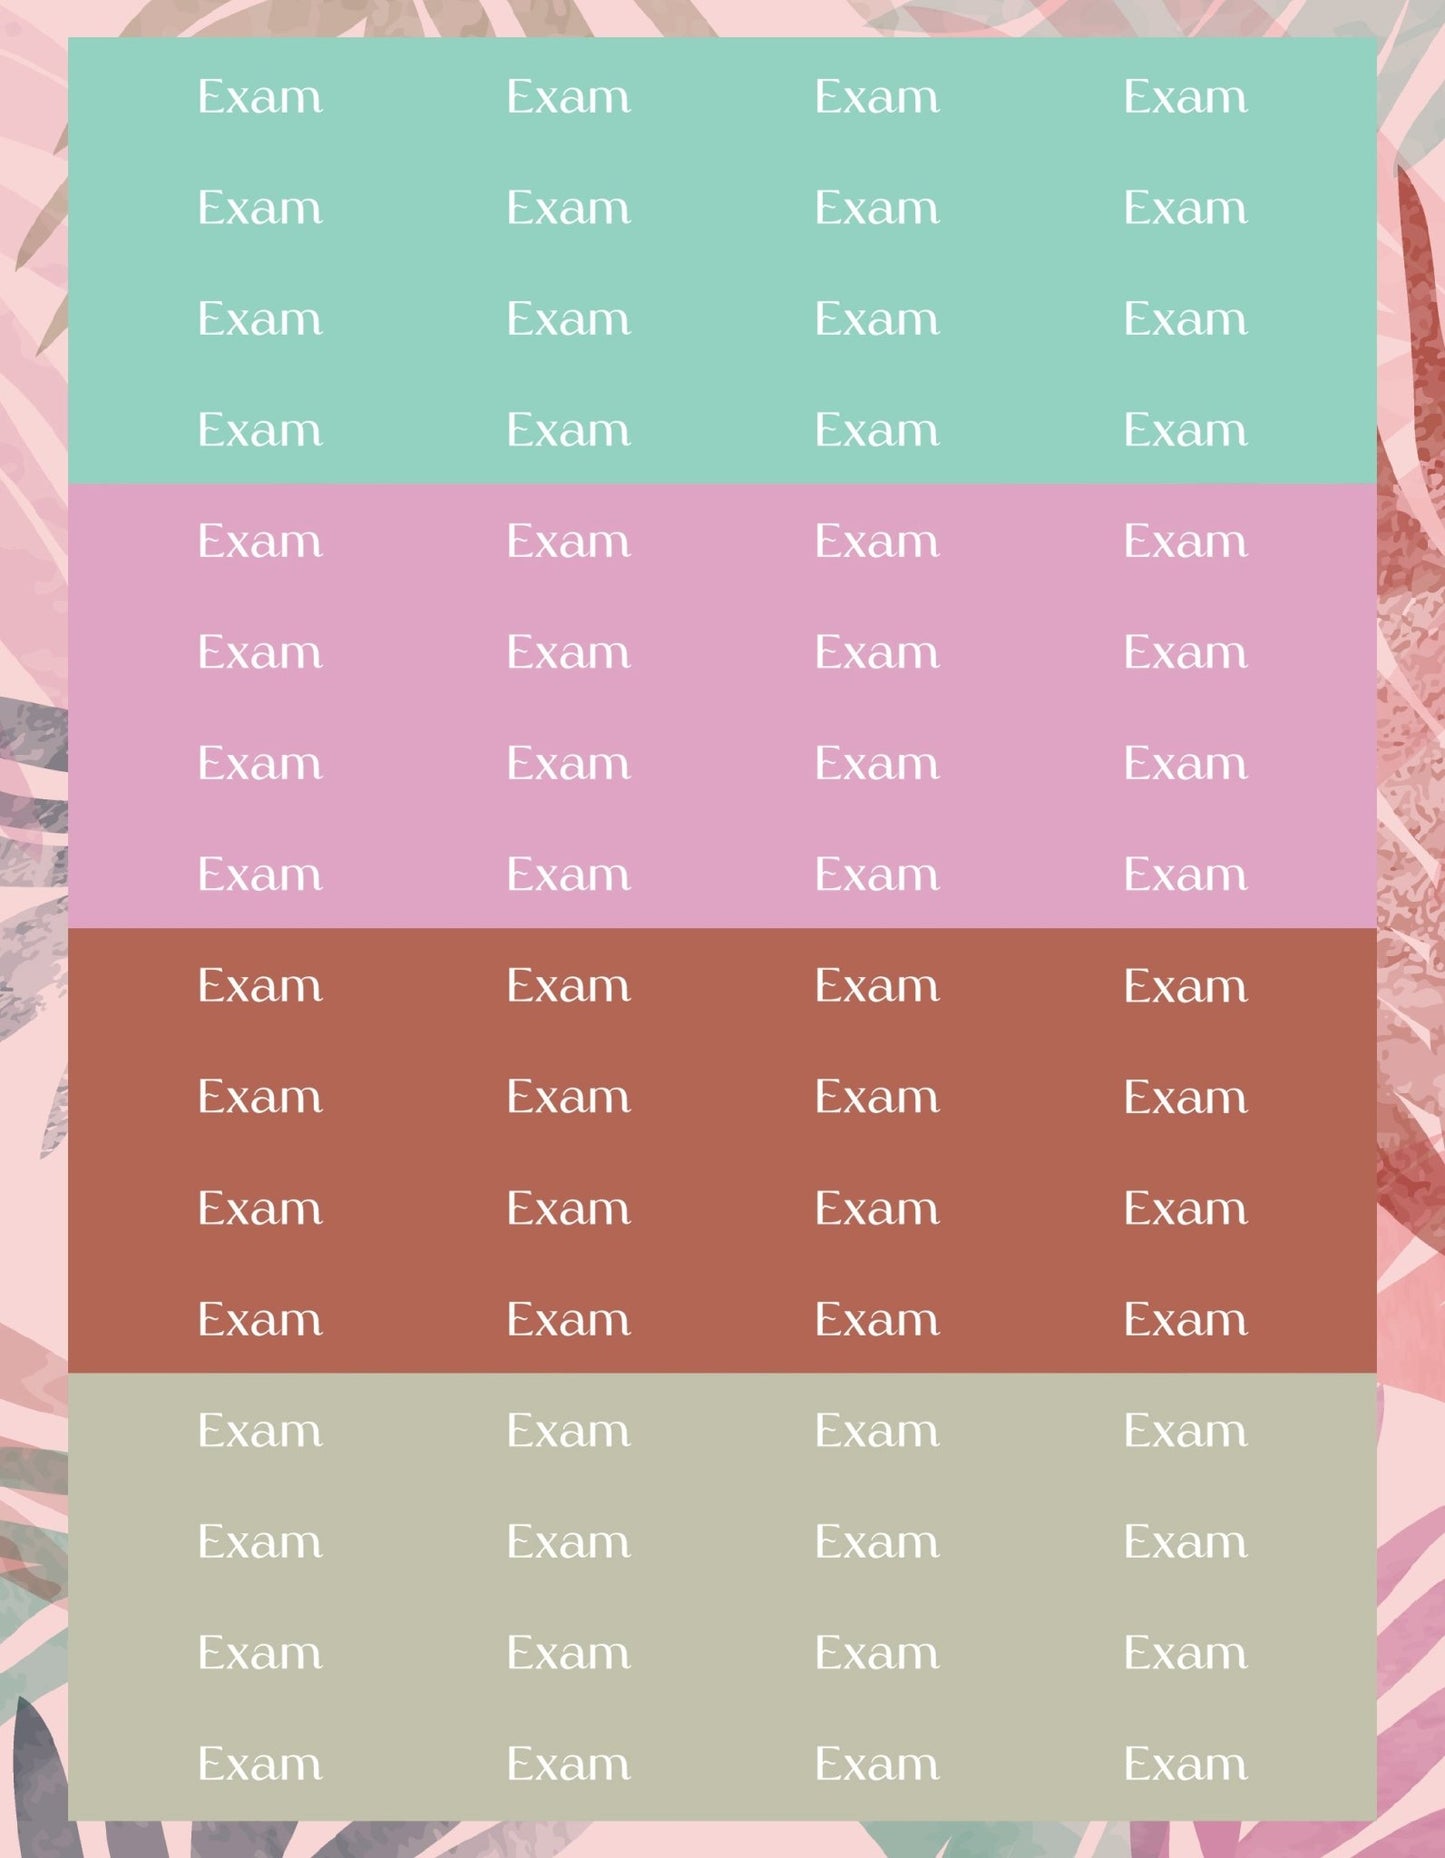 Exam Sticker Sheets - 9 Designs/Colors - Colibri Paper Co